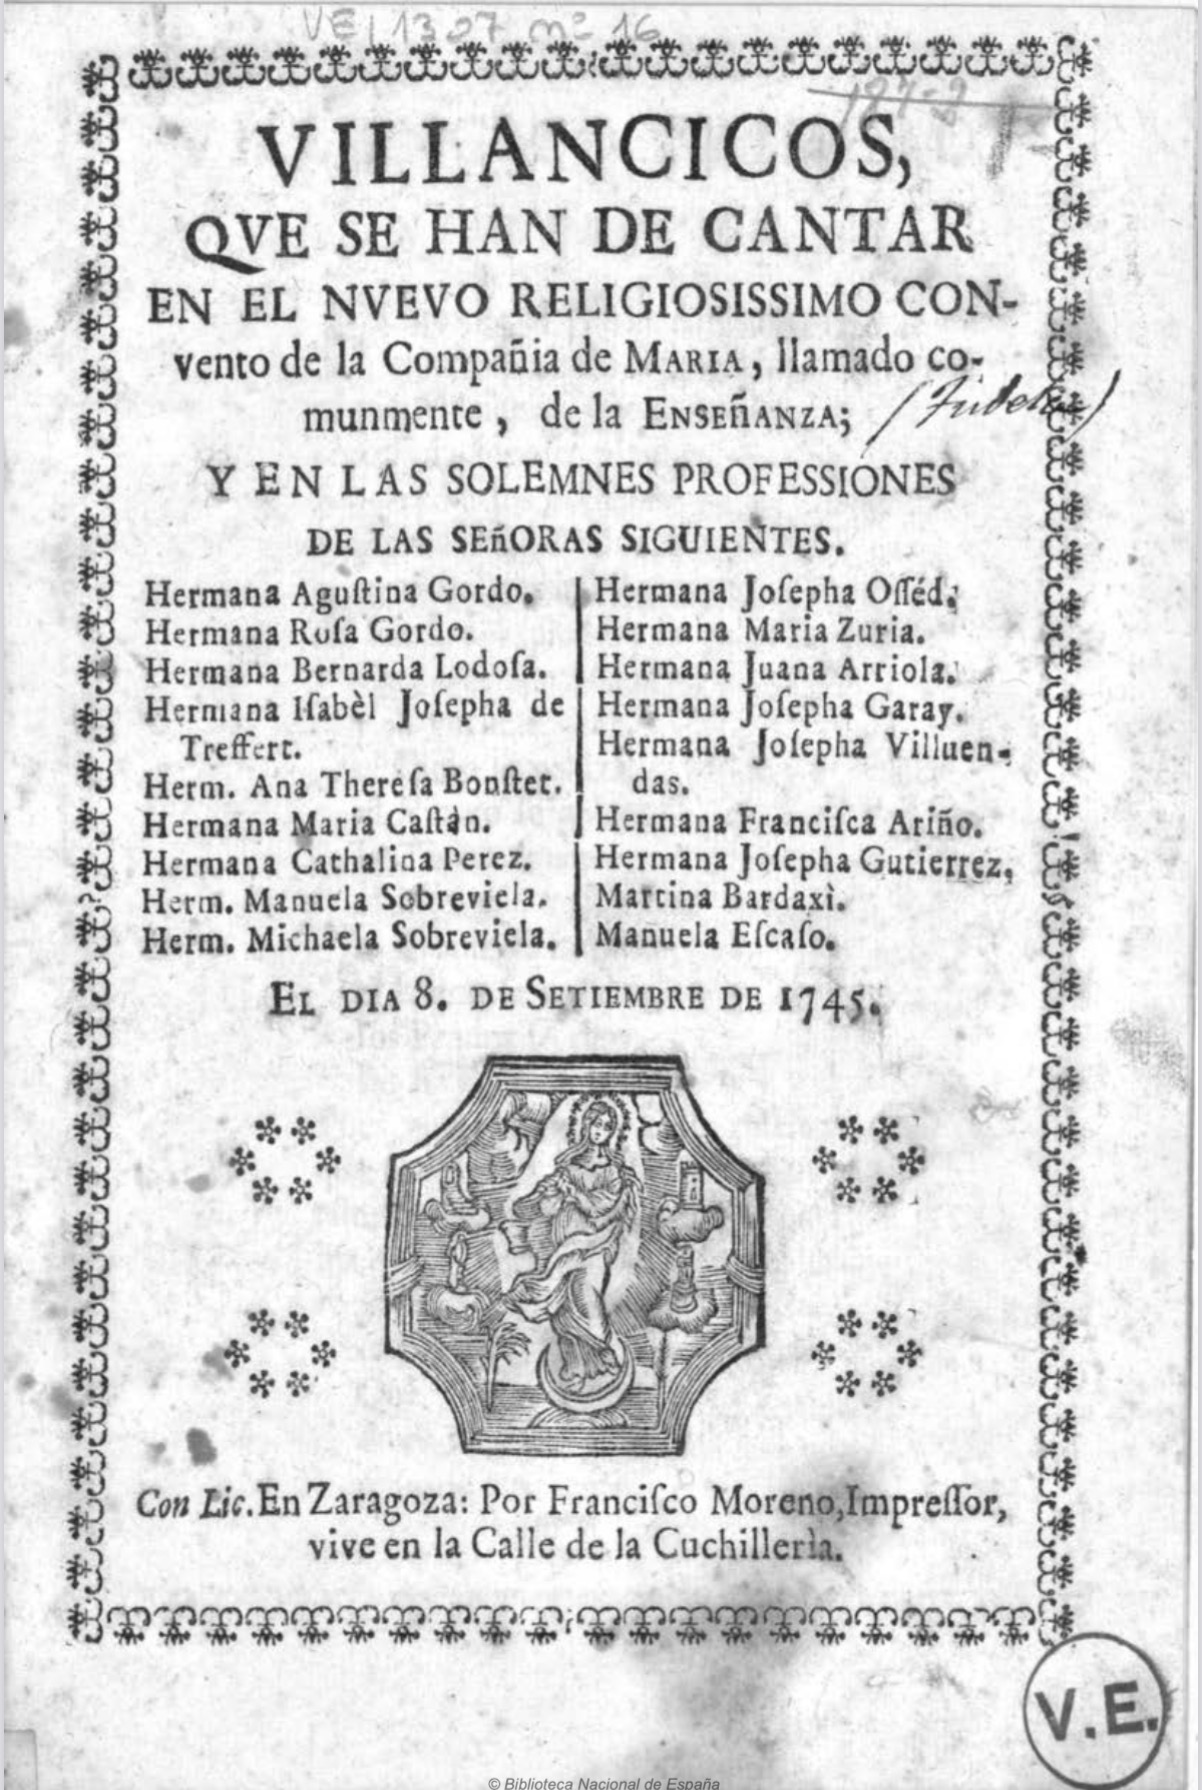 <em>Villancicos que se han de cantar en el nuevo ... Convento de la Compañia de Maria... el dia 8 de Septiembre de 1745</em>